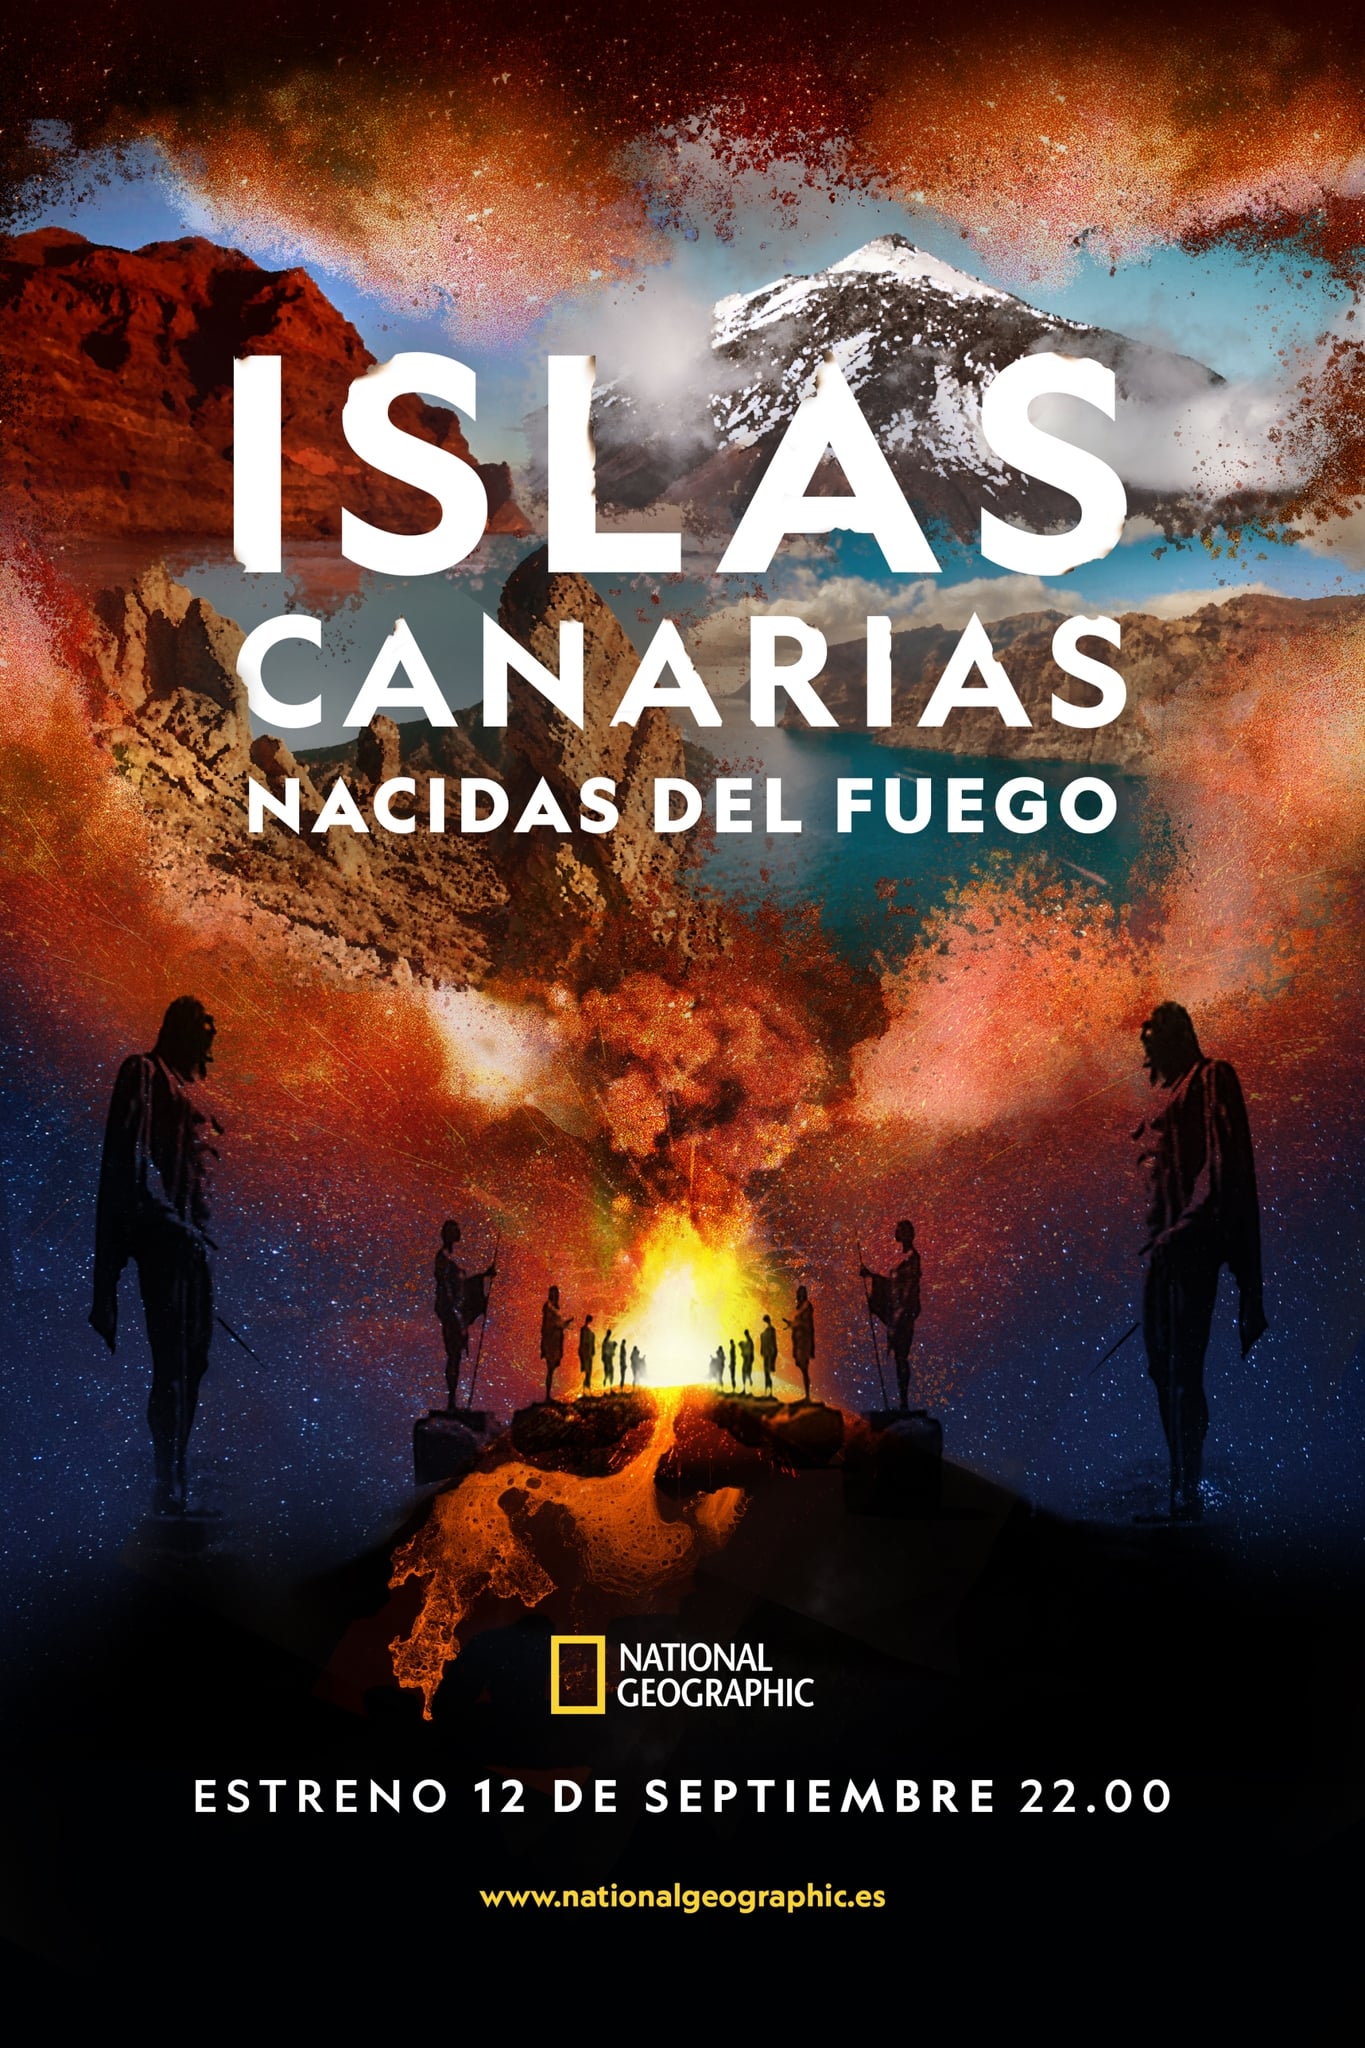 Islas Canarias: Nacidas del fuego